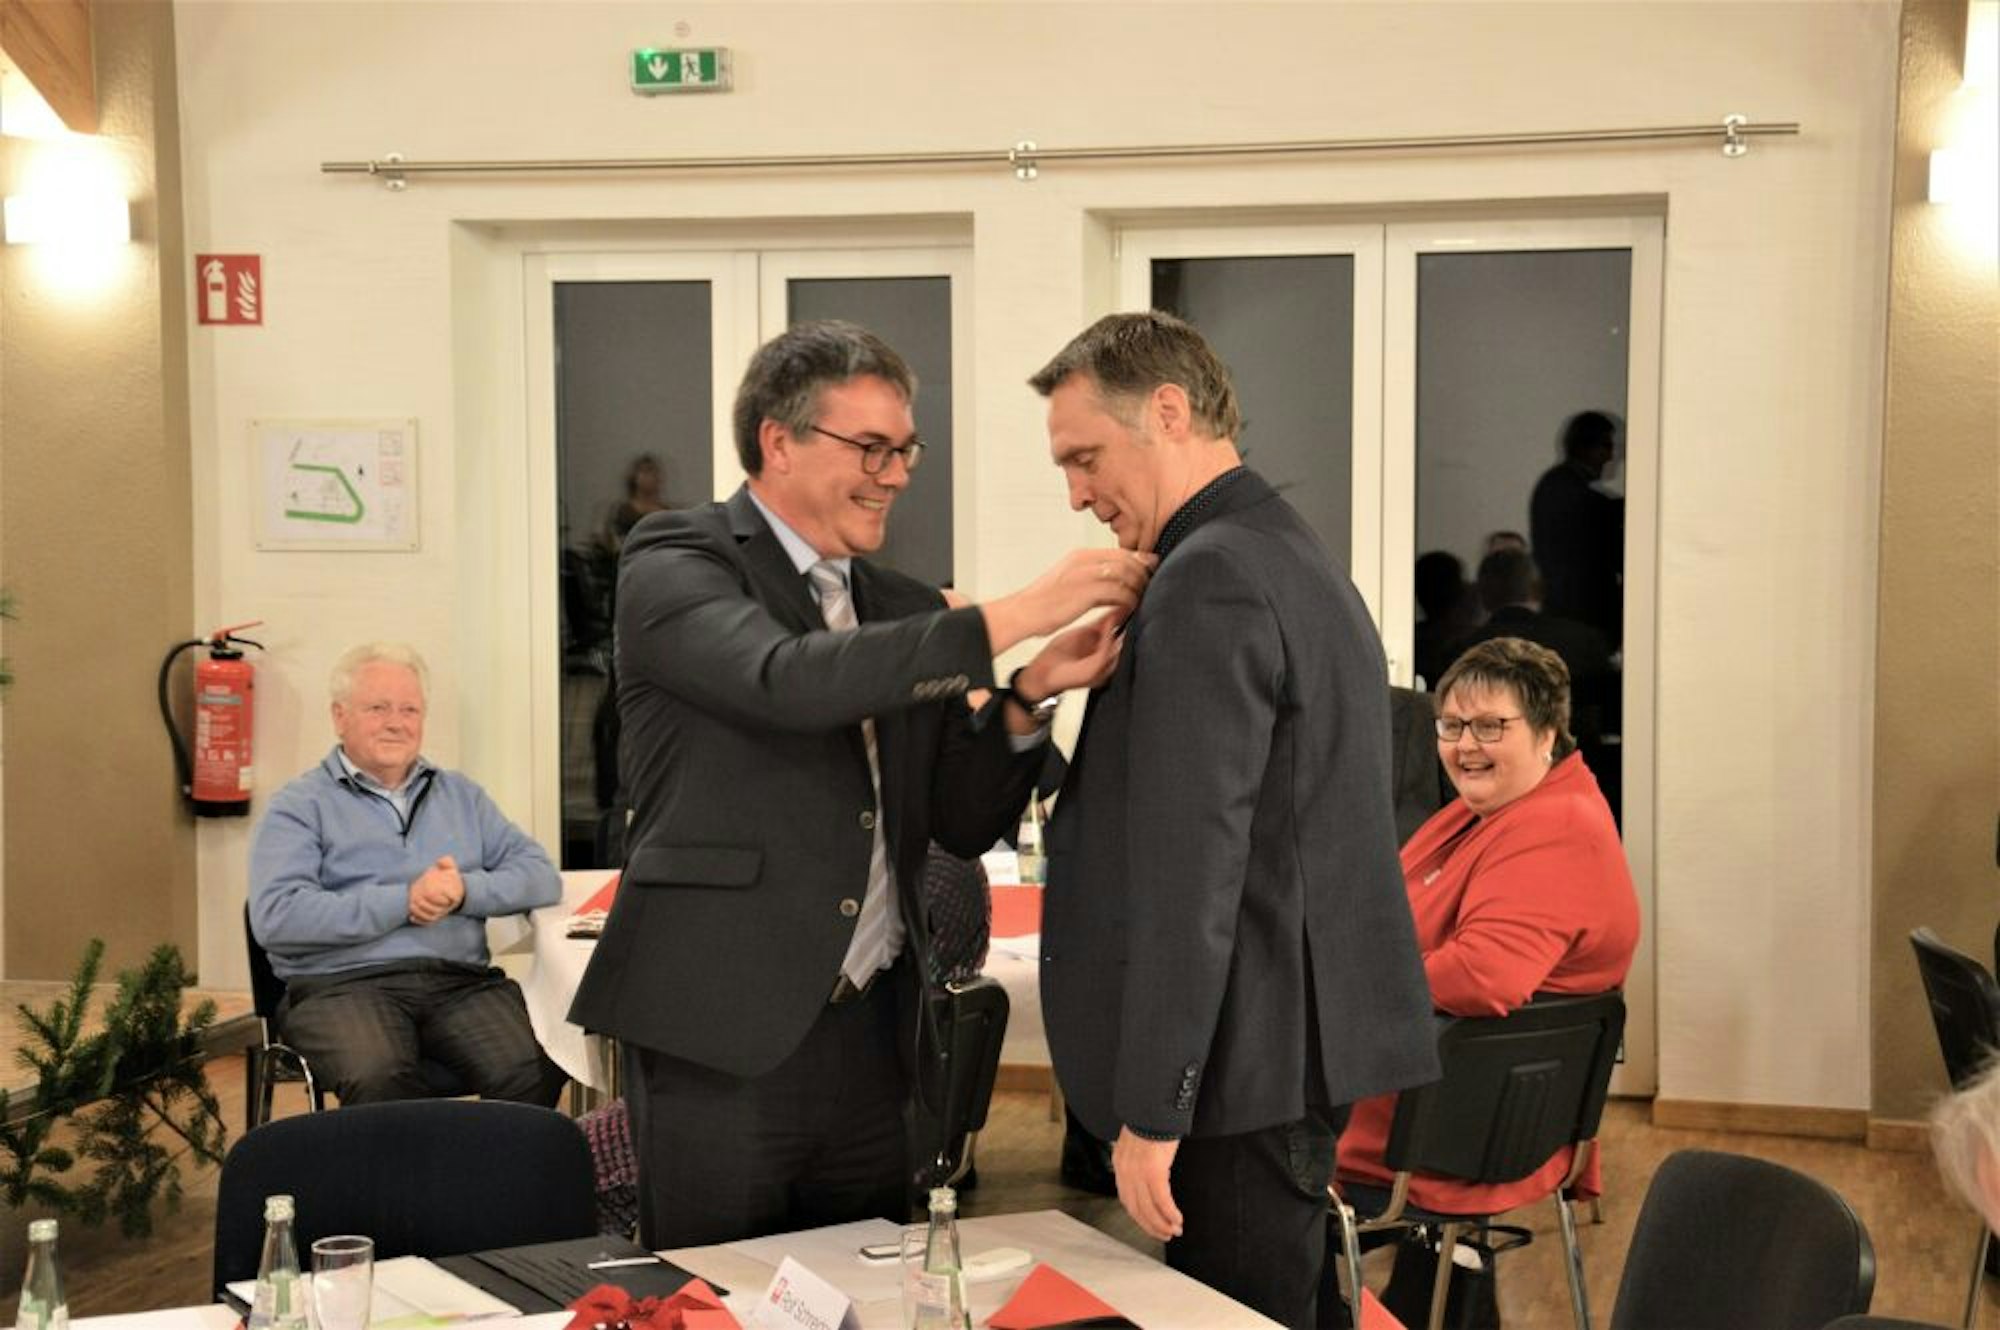 Das Goldene Ehrenzeichen der Caritas befestigt Stephan Jentgens am Revers des Anzugs von Rolf Schneider.